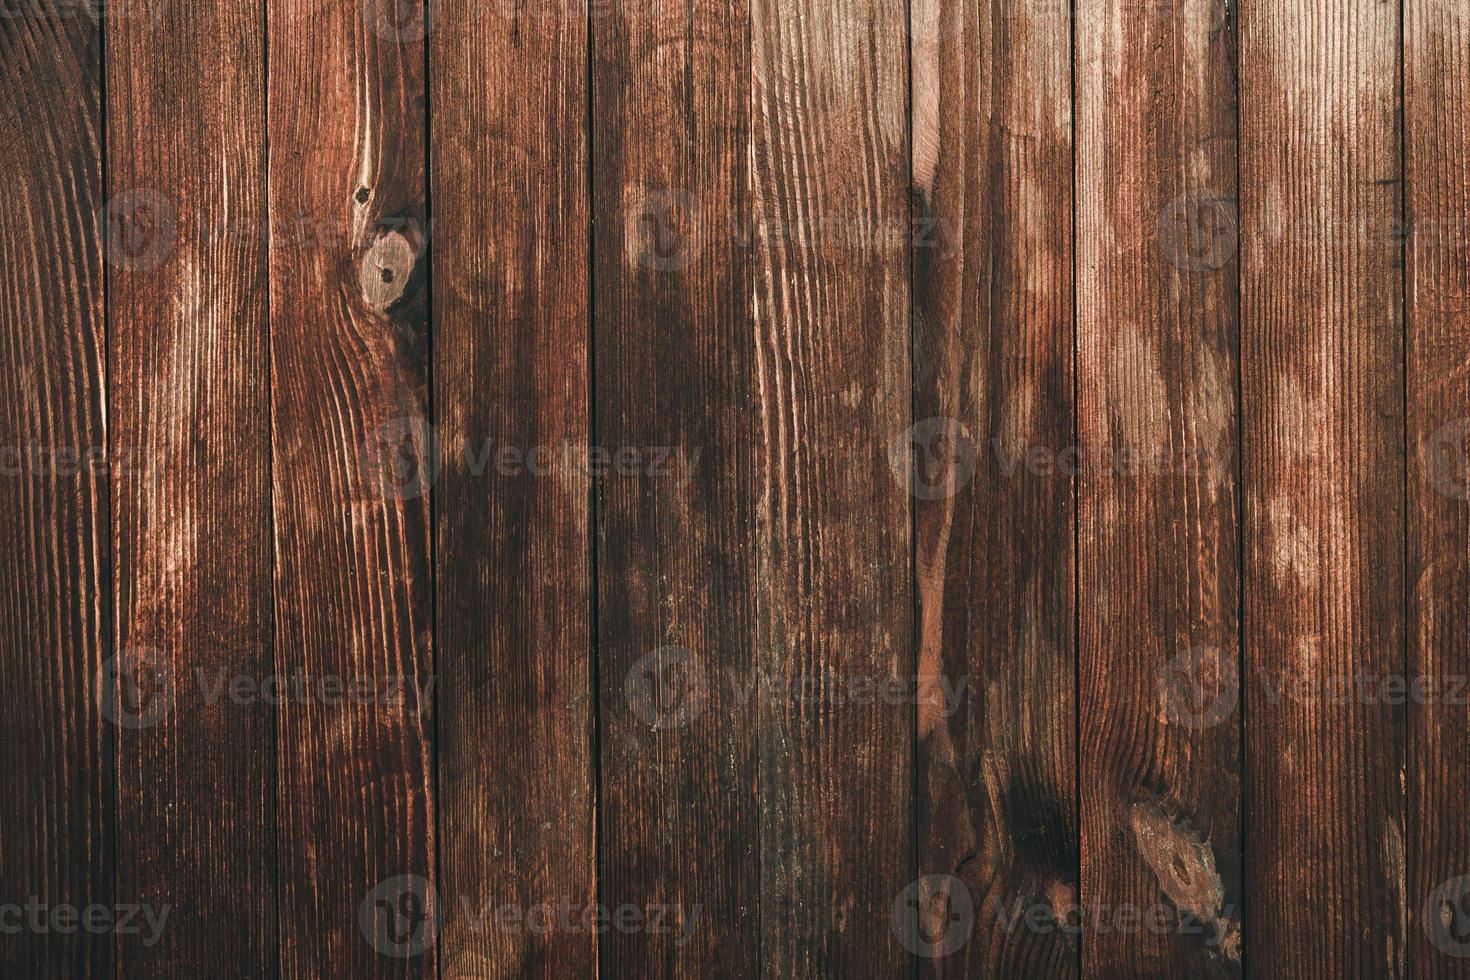 texture de fond en bois brun vintage avec noeuds et trous de clous. vieux mur en bois peint. fond abstrait marron. planches horizontales sombres en bois vintage. vue de face avec espace de copie photo